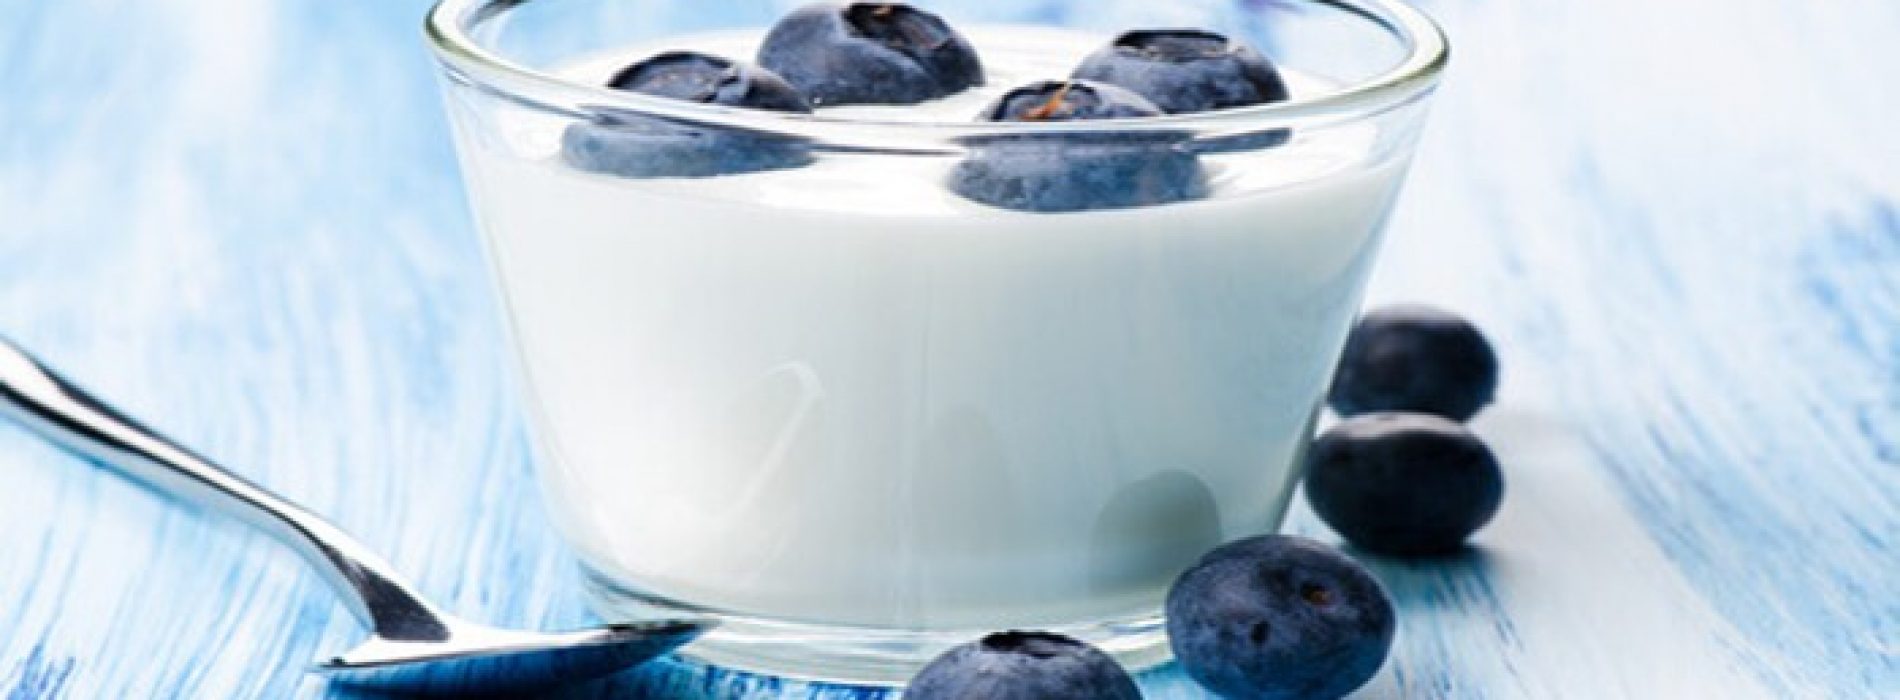 Natuurlijke detox met blauwe bessen en yoghurt